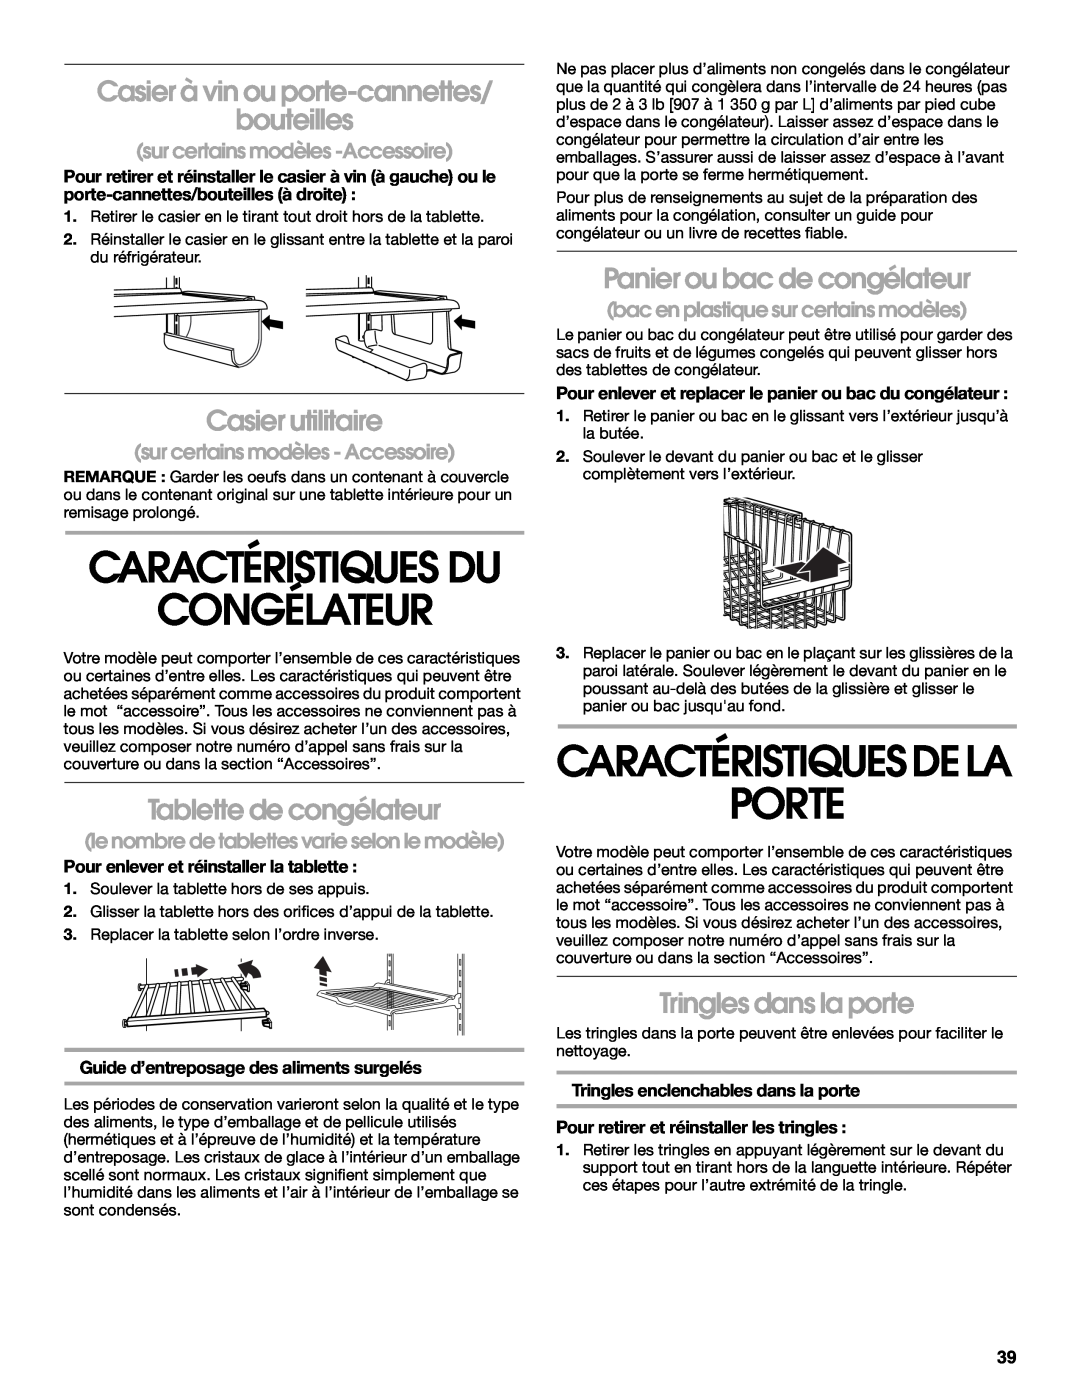 Whirlpool RS22AQXKQ02 manual Congélateur, Porte, Caractéristiquesdela, Caractéristiques Du, Casier utilitaire 